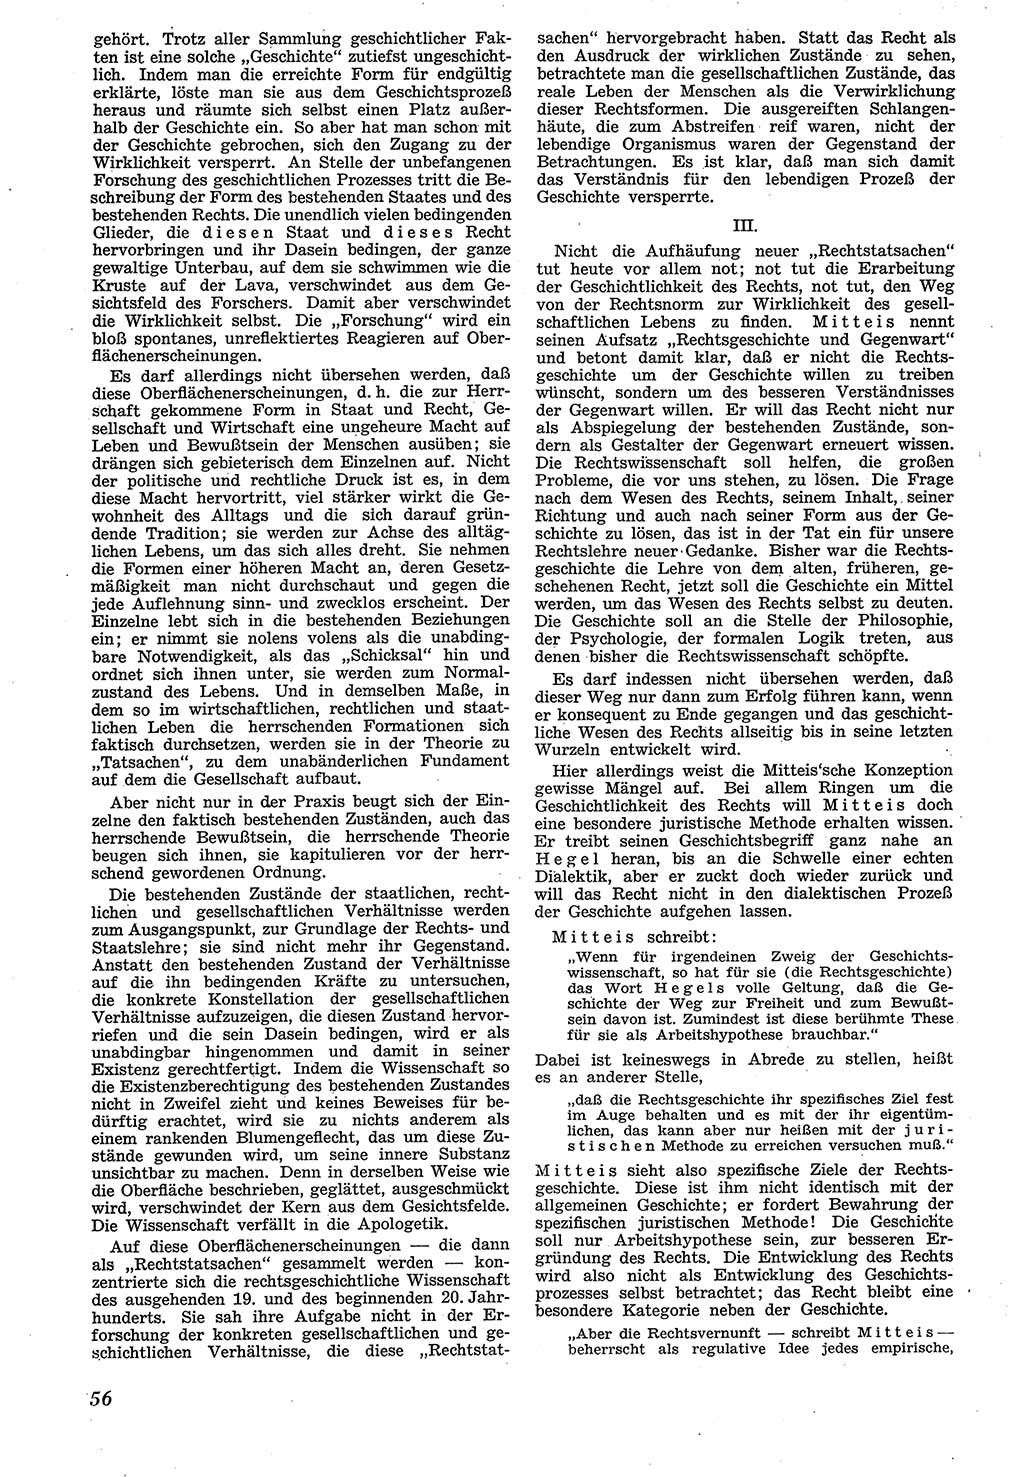 Neue Justiz (NJ), Zeitschrift für Recht und Rechtswissenschaft [Sowjetische Besatzungszone (SBZ) Deutschland], 1. Jahrgang 1947, Seite 56 (NJ SBZ Dtl. 1947, S. 56)